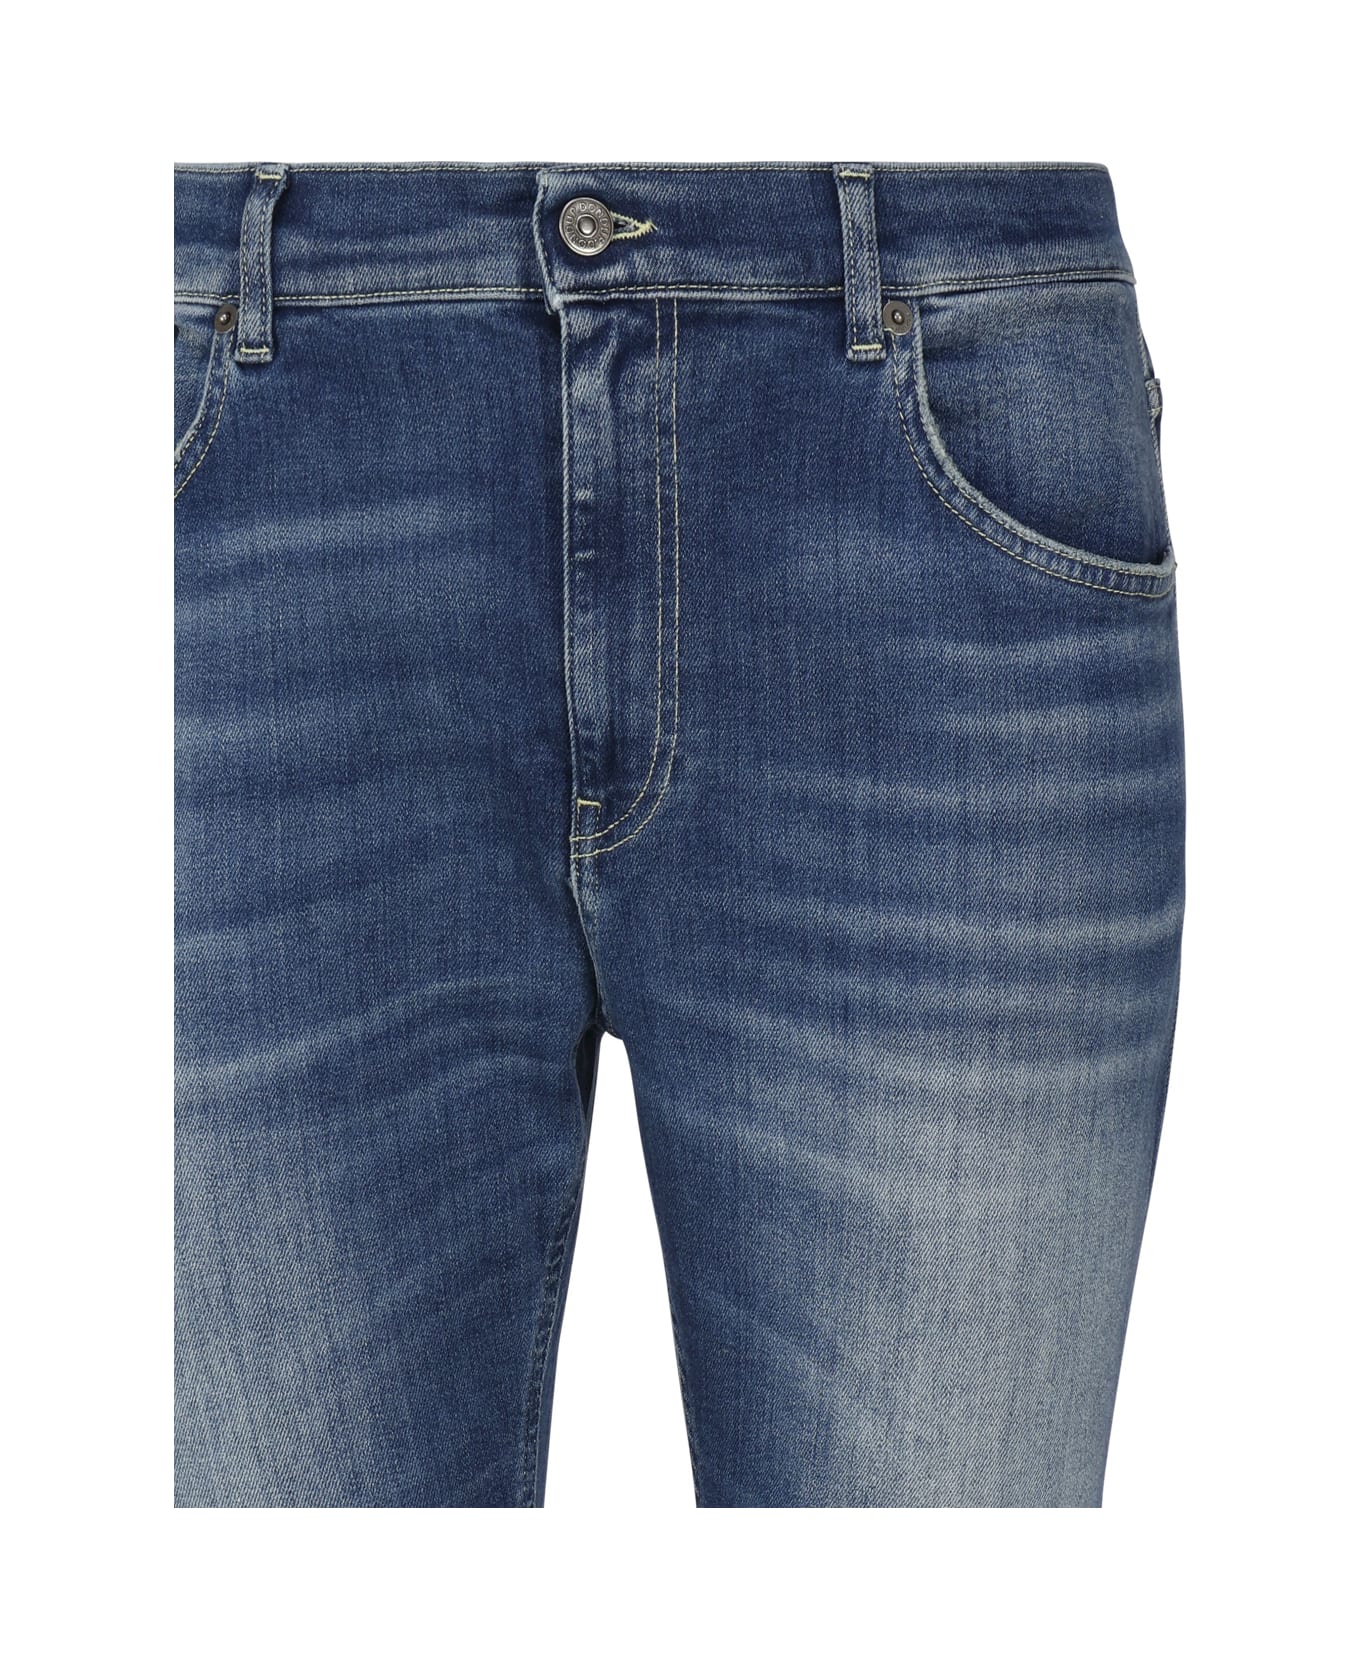 Dondup Alex Super Skinny Jeans In Stretch Denim - Blue